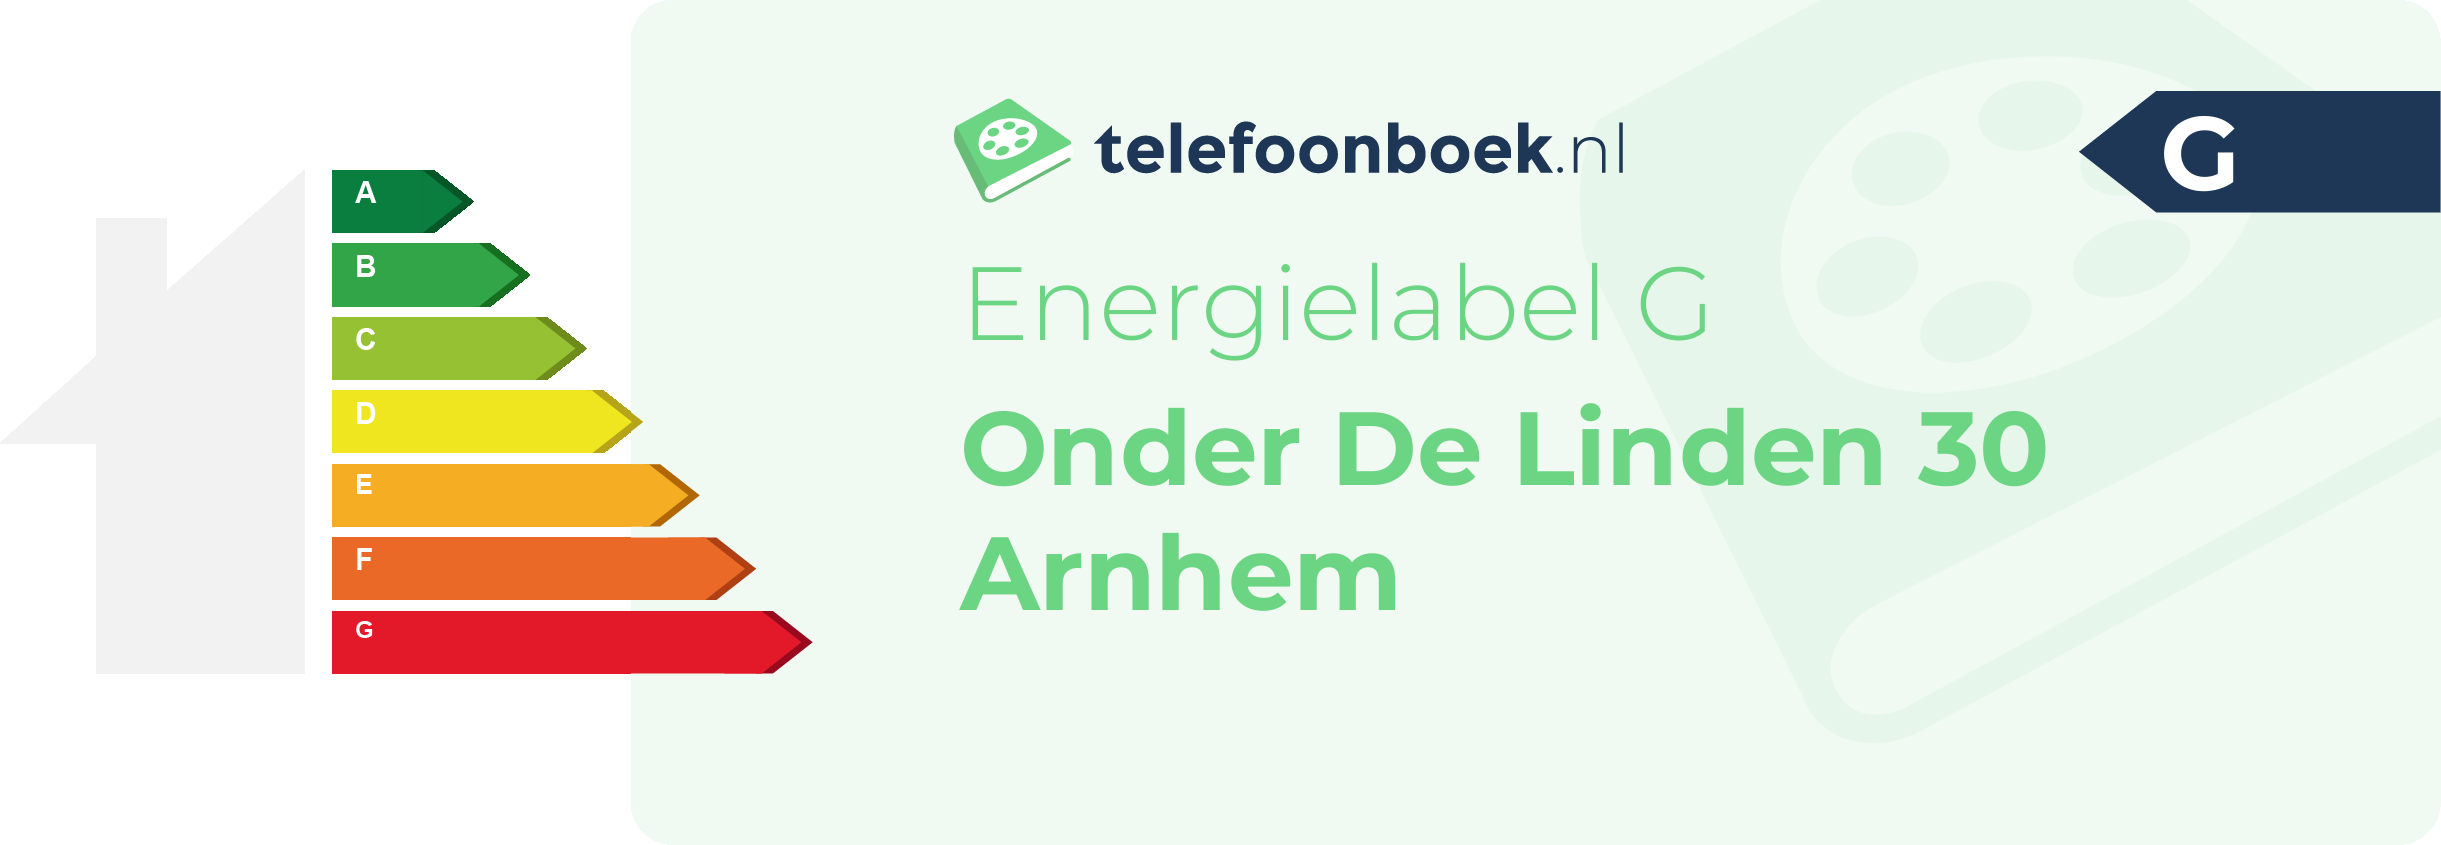 Energielabel Onder De Linden 30 Arnhem